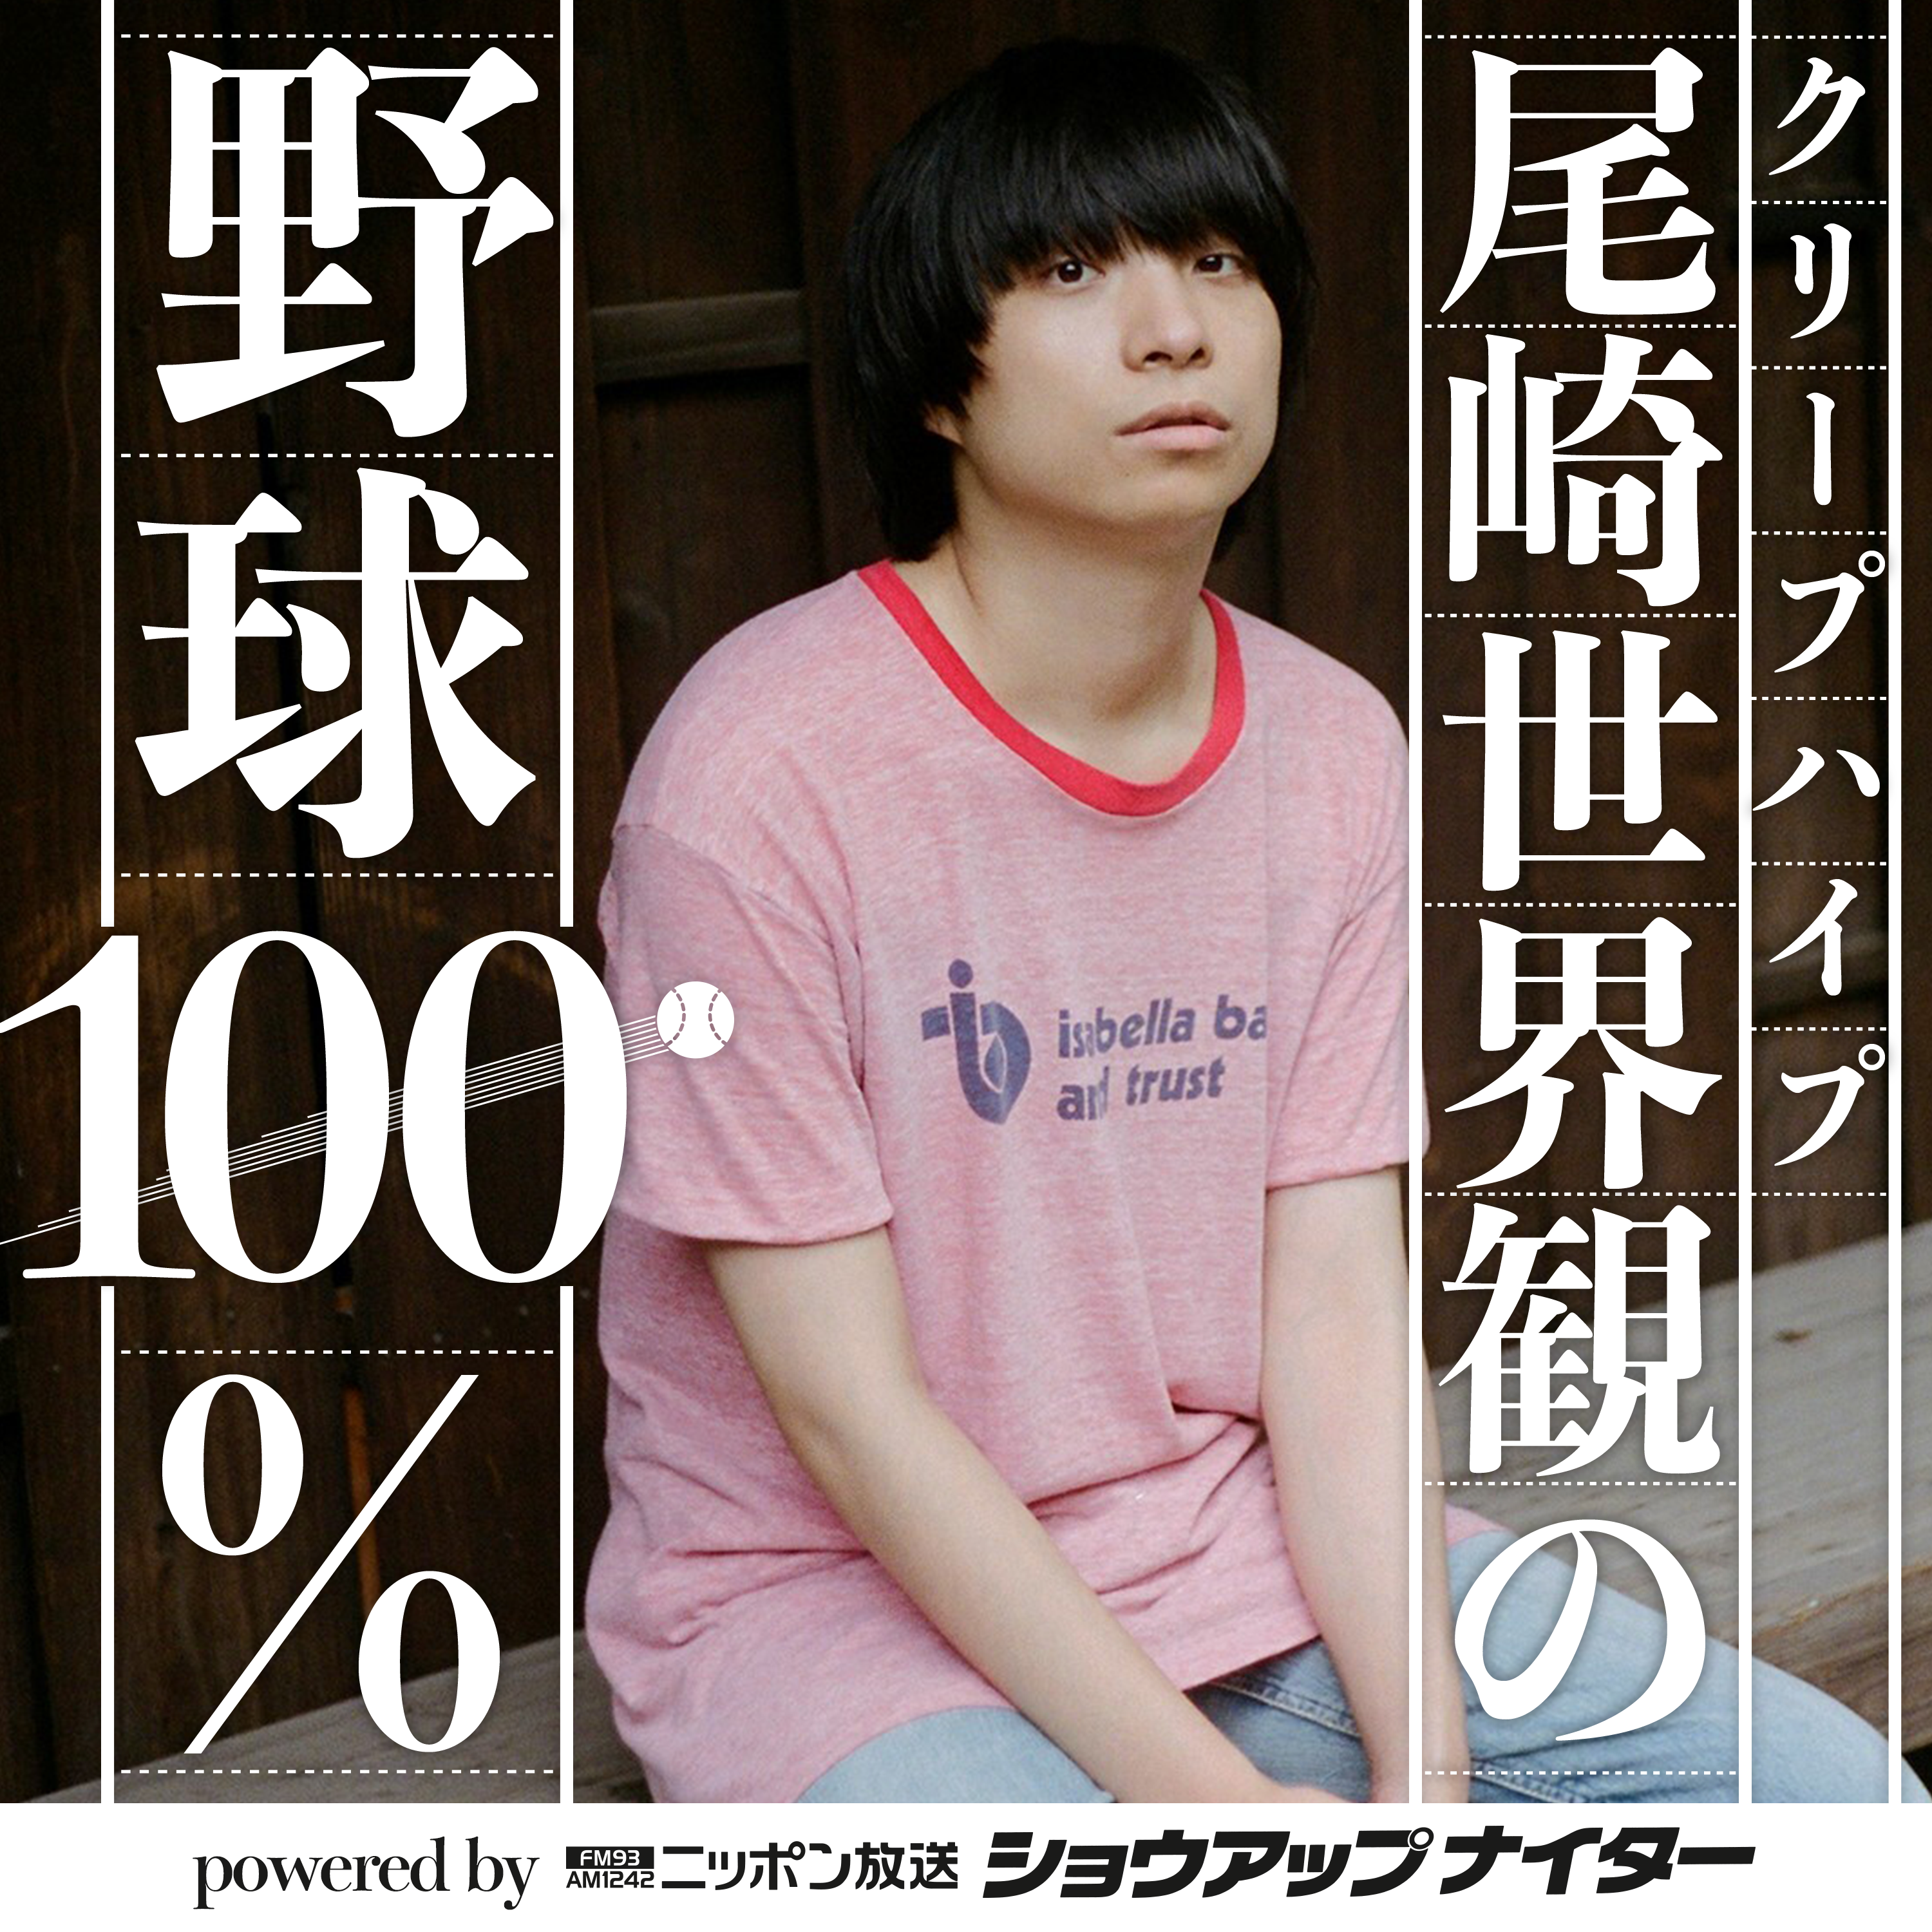 【シーズン13第2回】クリープハイプ尾崎世界観の野球100% powered by ニッポン放送ショウアップナイター